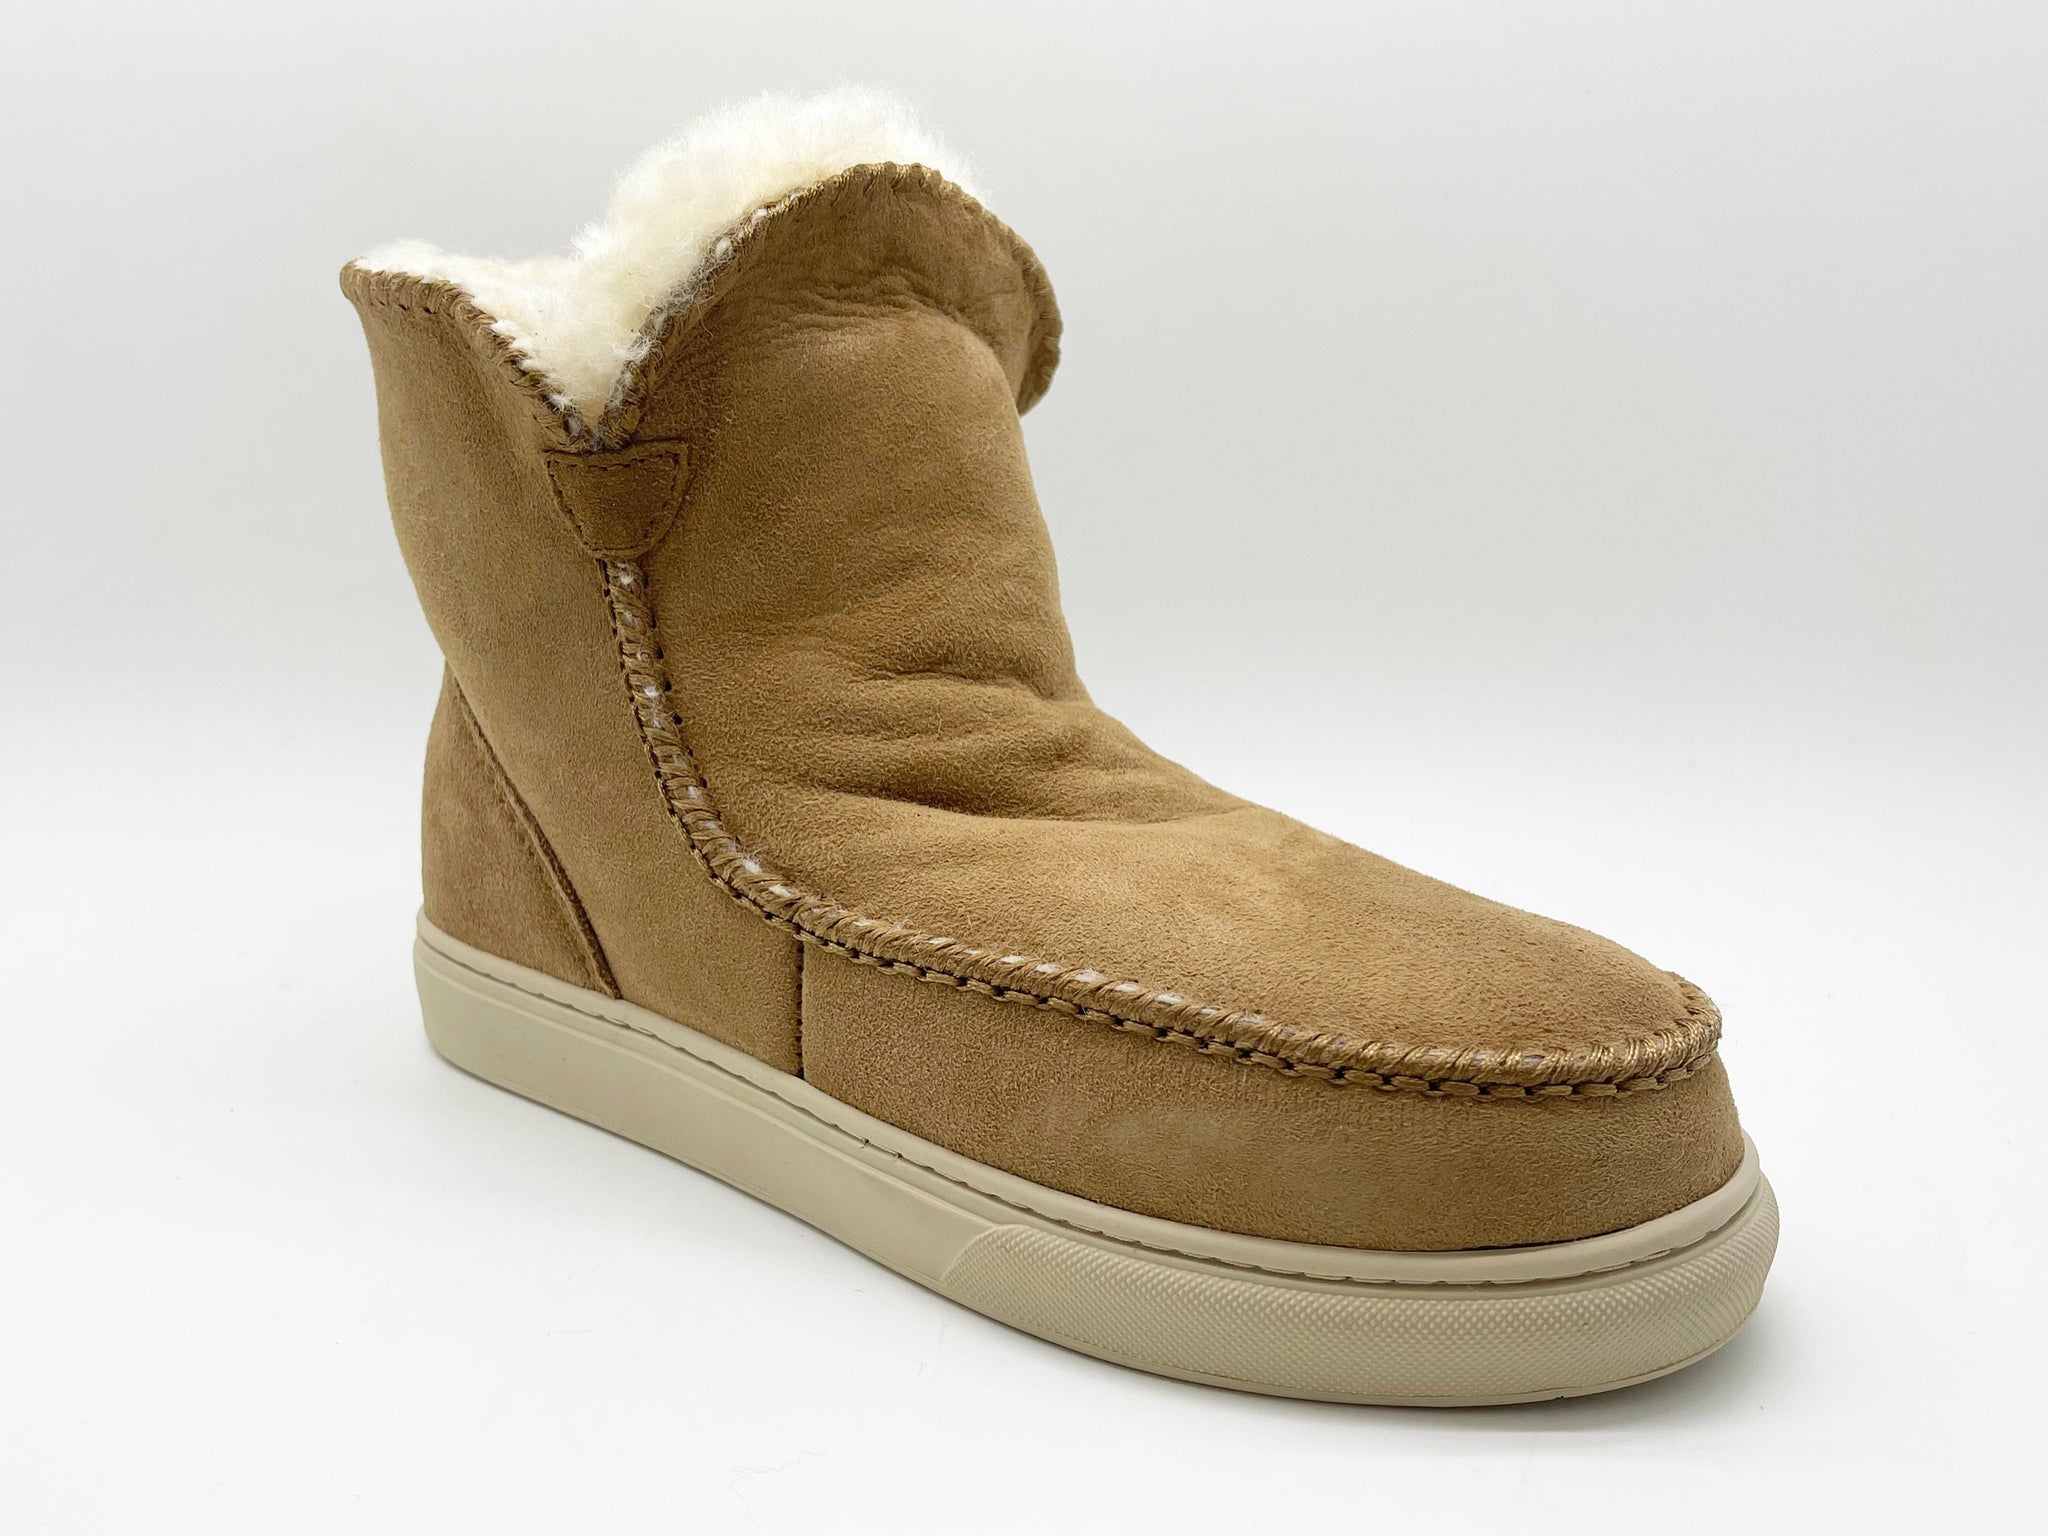 NAT 2 Schuhe thies 1856 ® Sneakerboot 2 Cashew (W) nachhaltige Mode ethische Mode